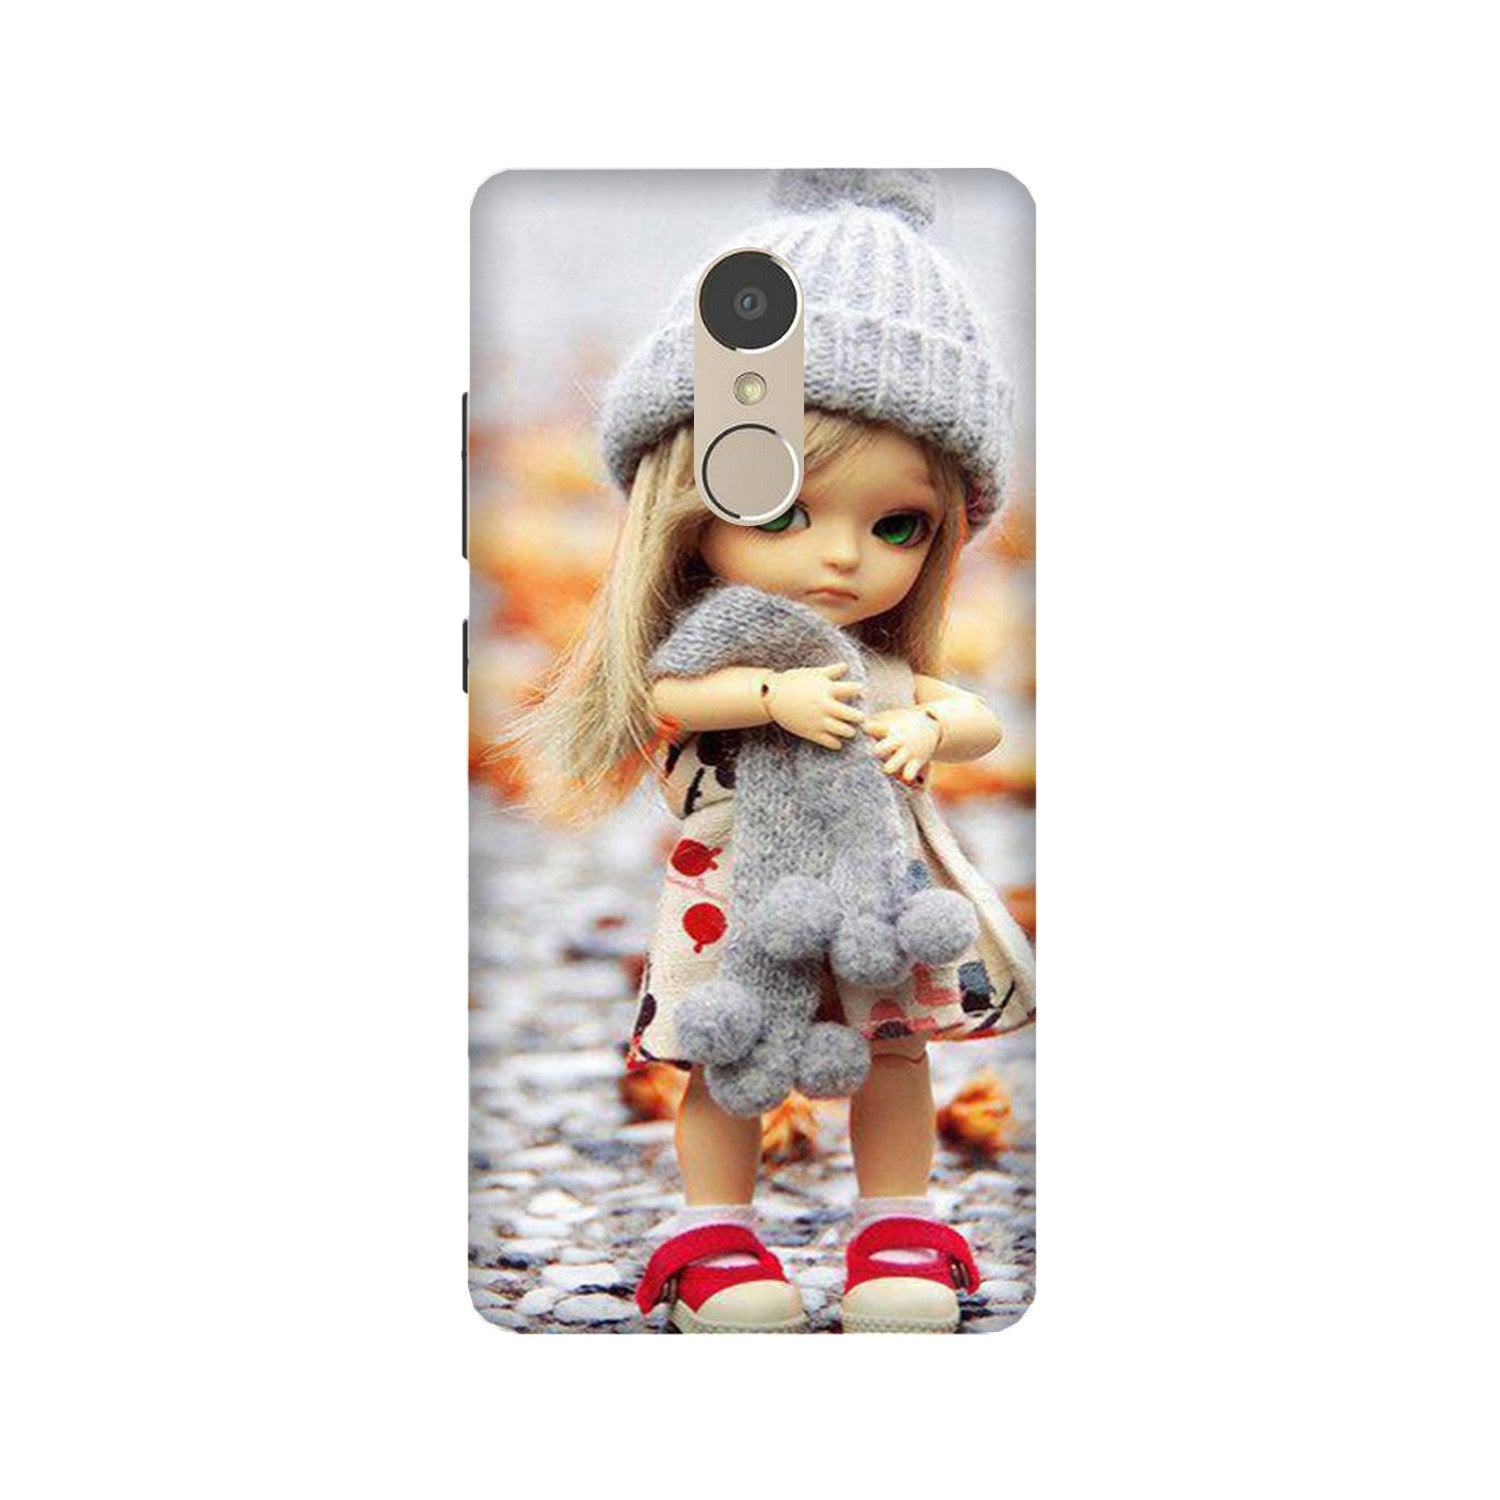 Cute Doll Case for Lenovo K6 Note